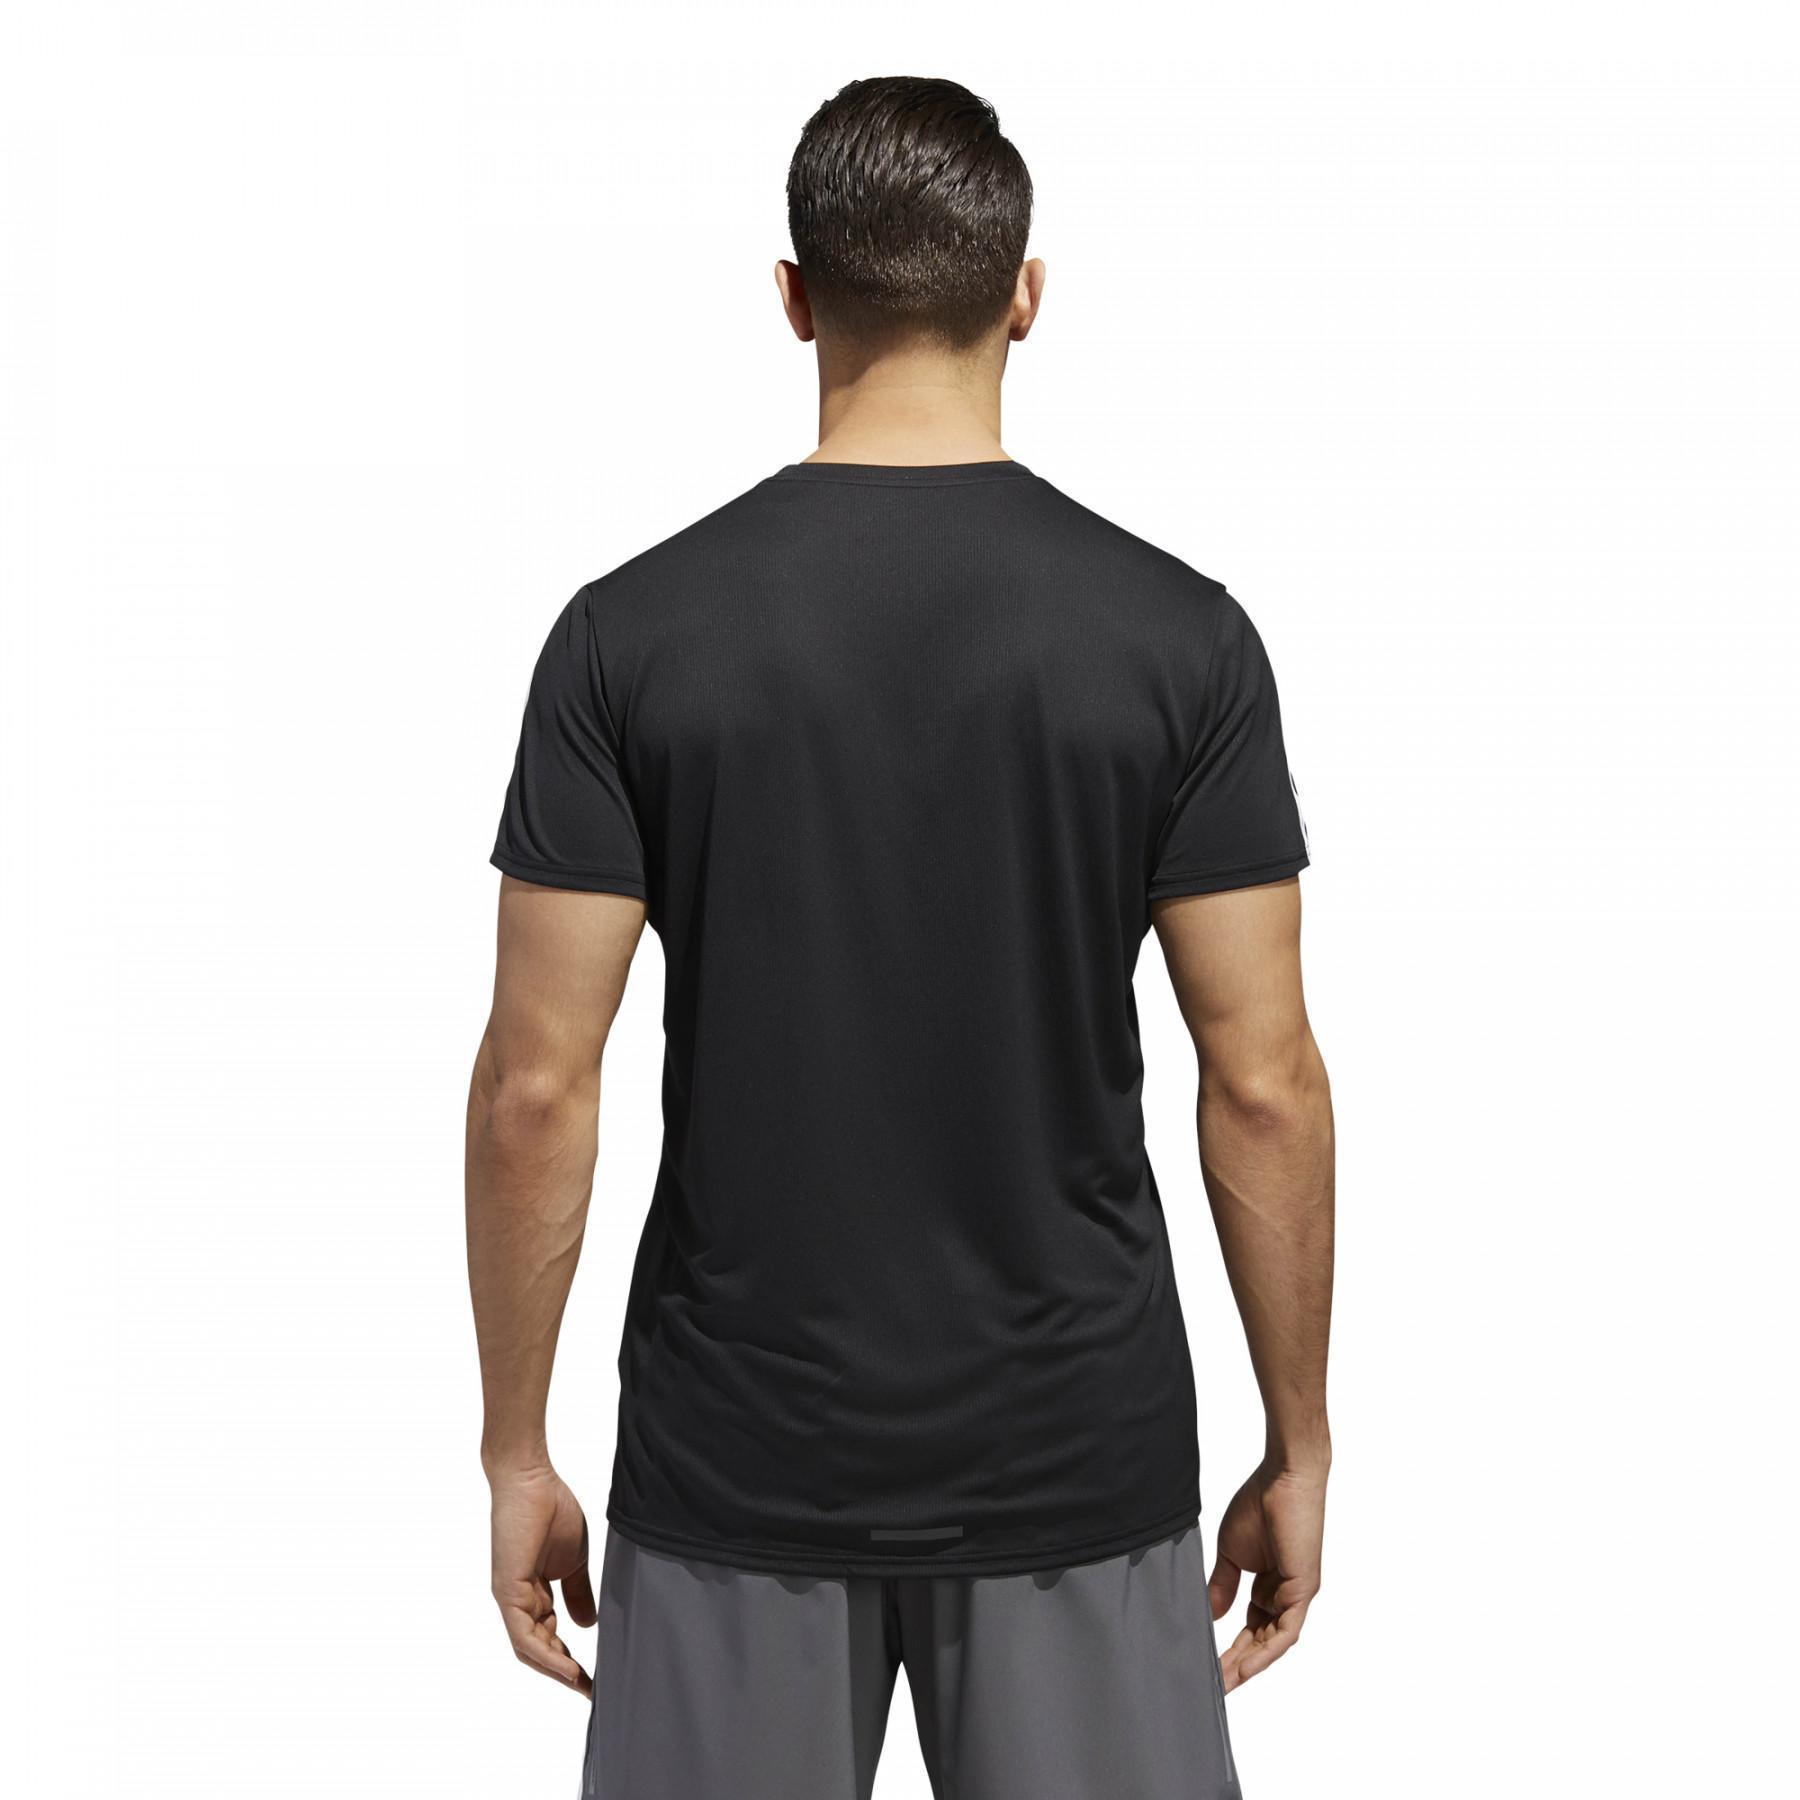 T-shirt de running adidas 3-Stripes